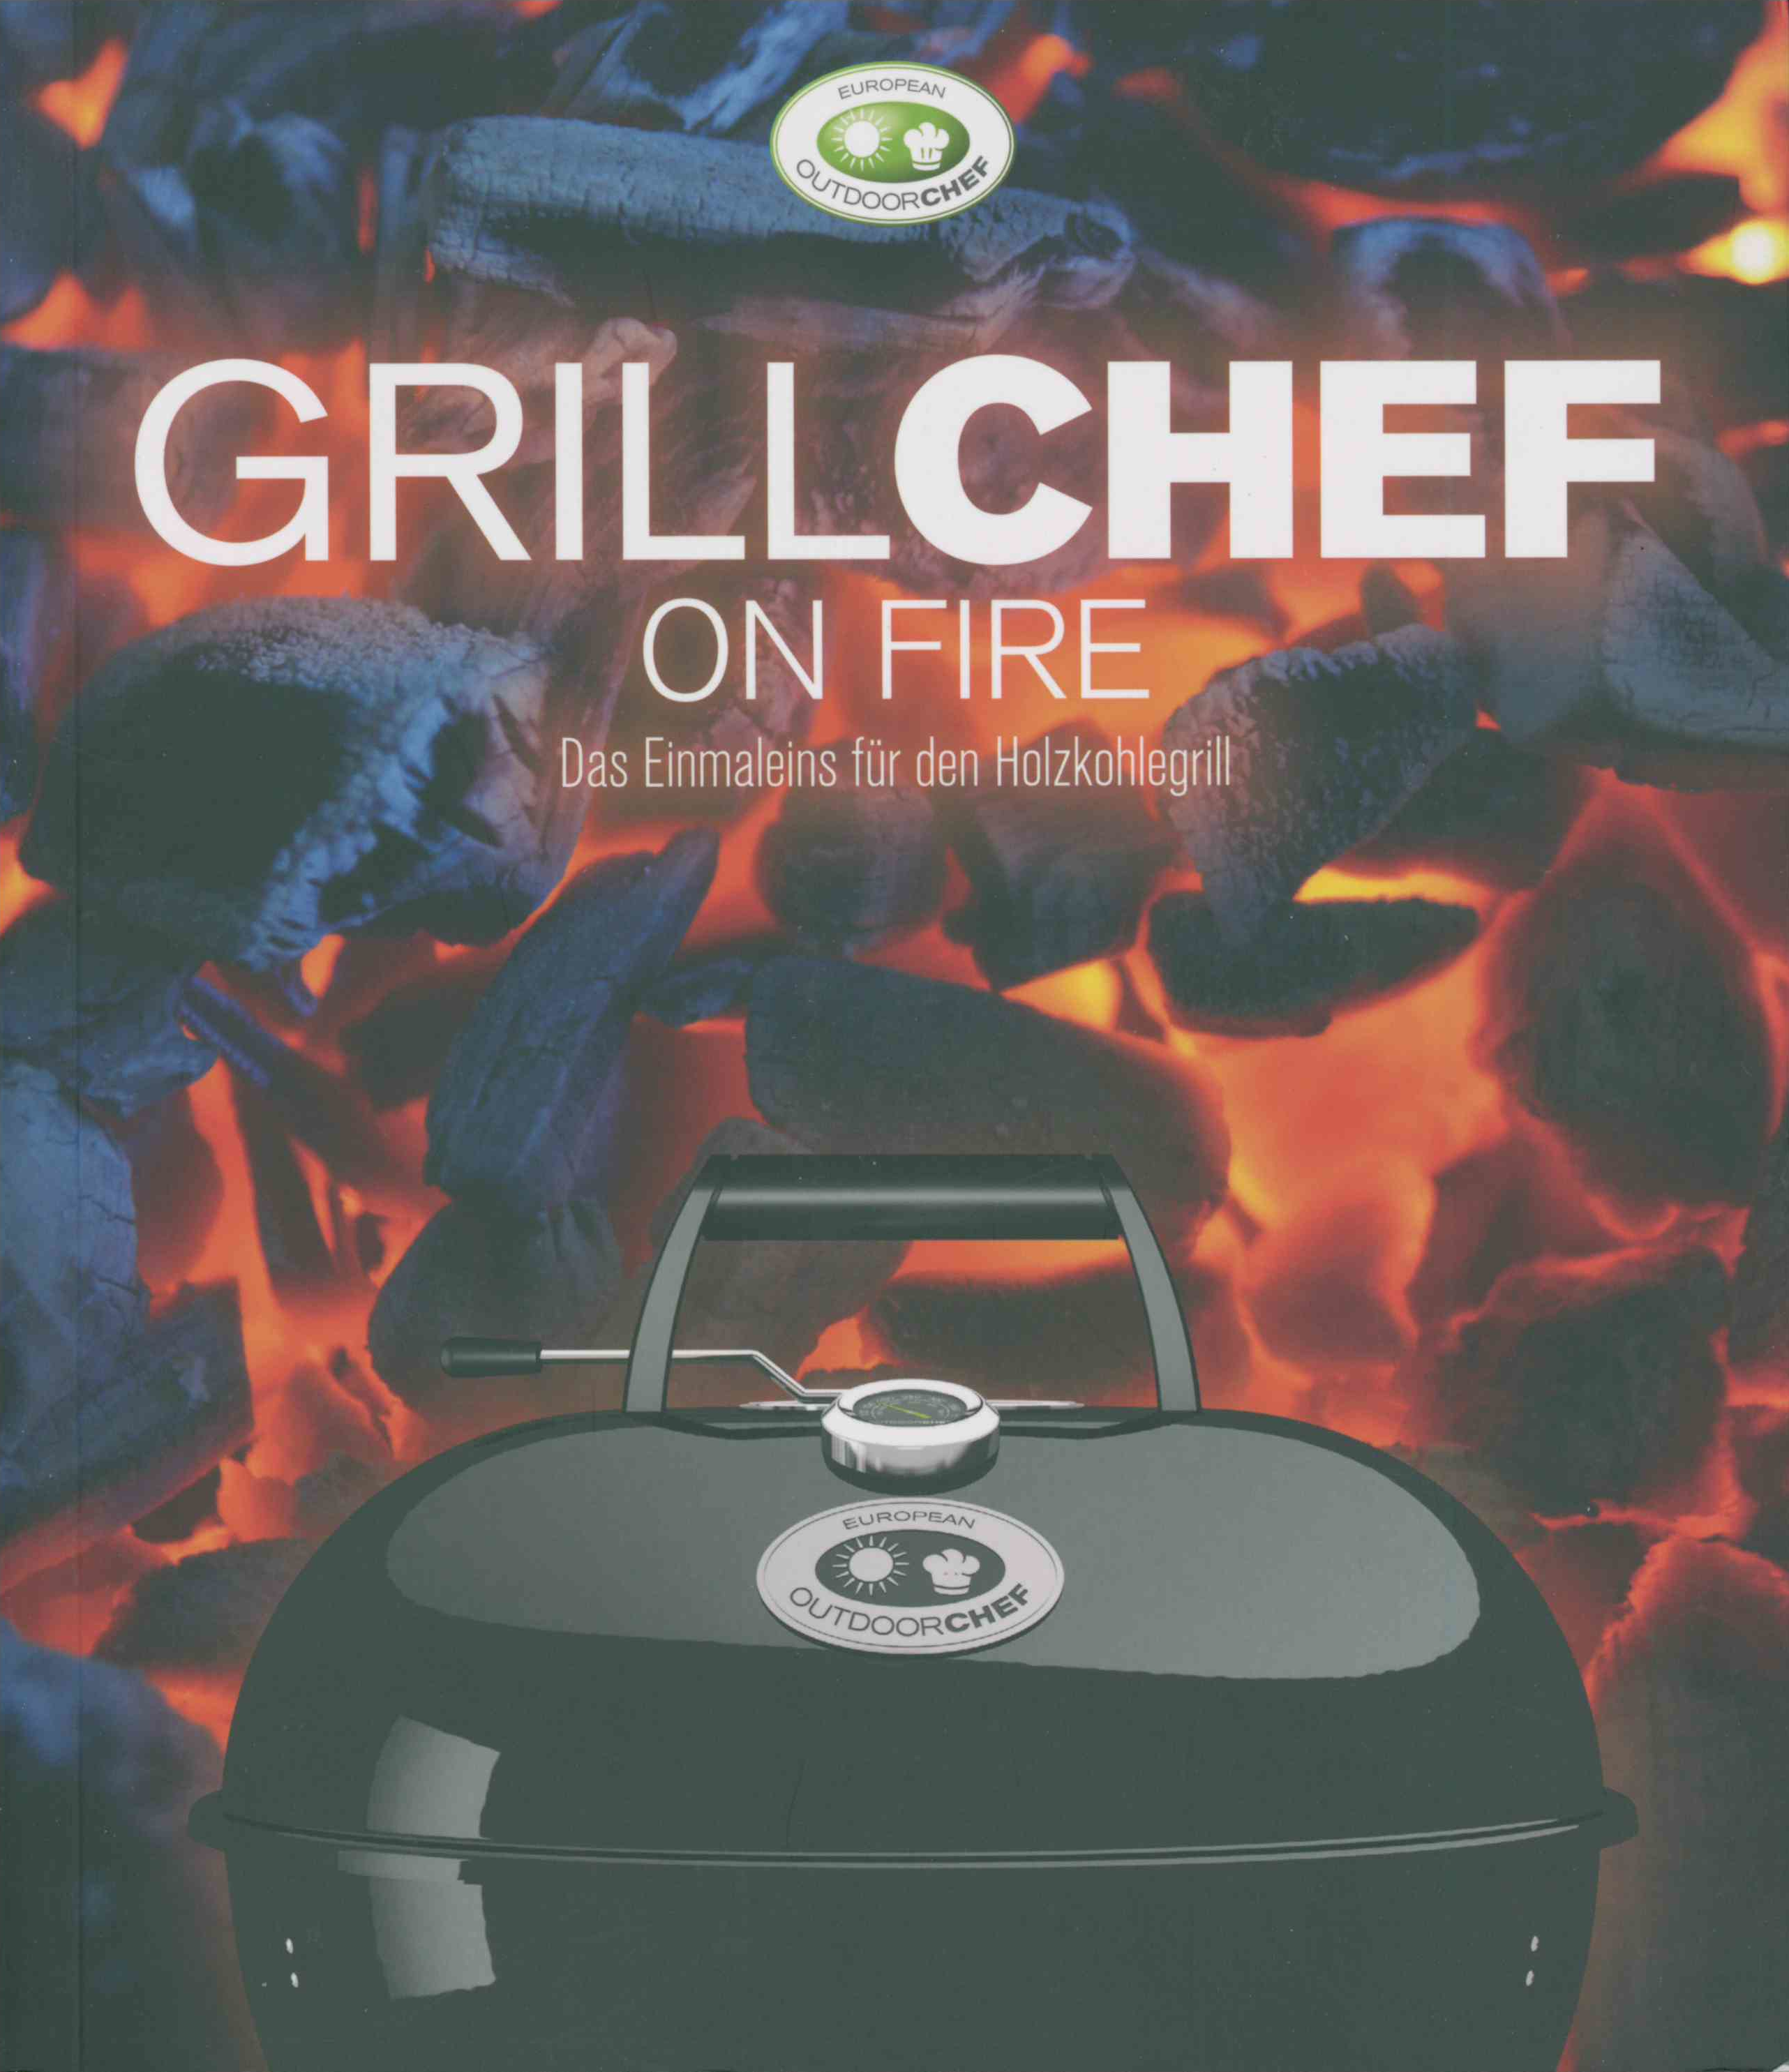 Outdoorchef | GrillChef on fire - das Einmaleins für den Holzkohlegrill